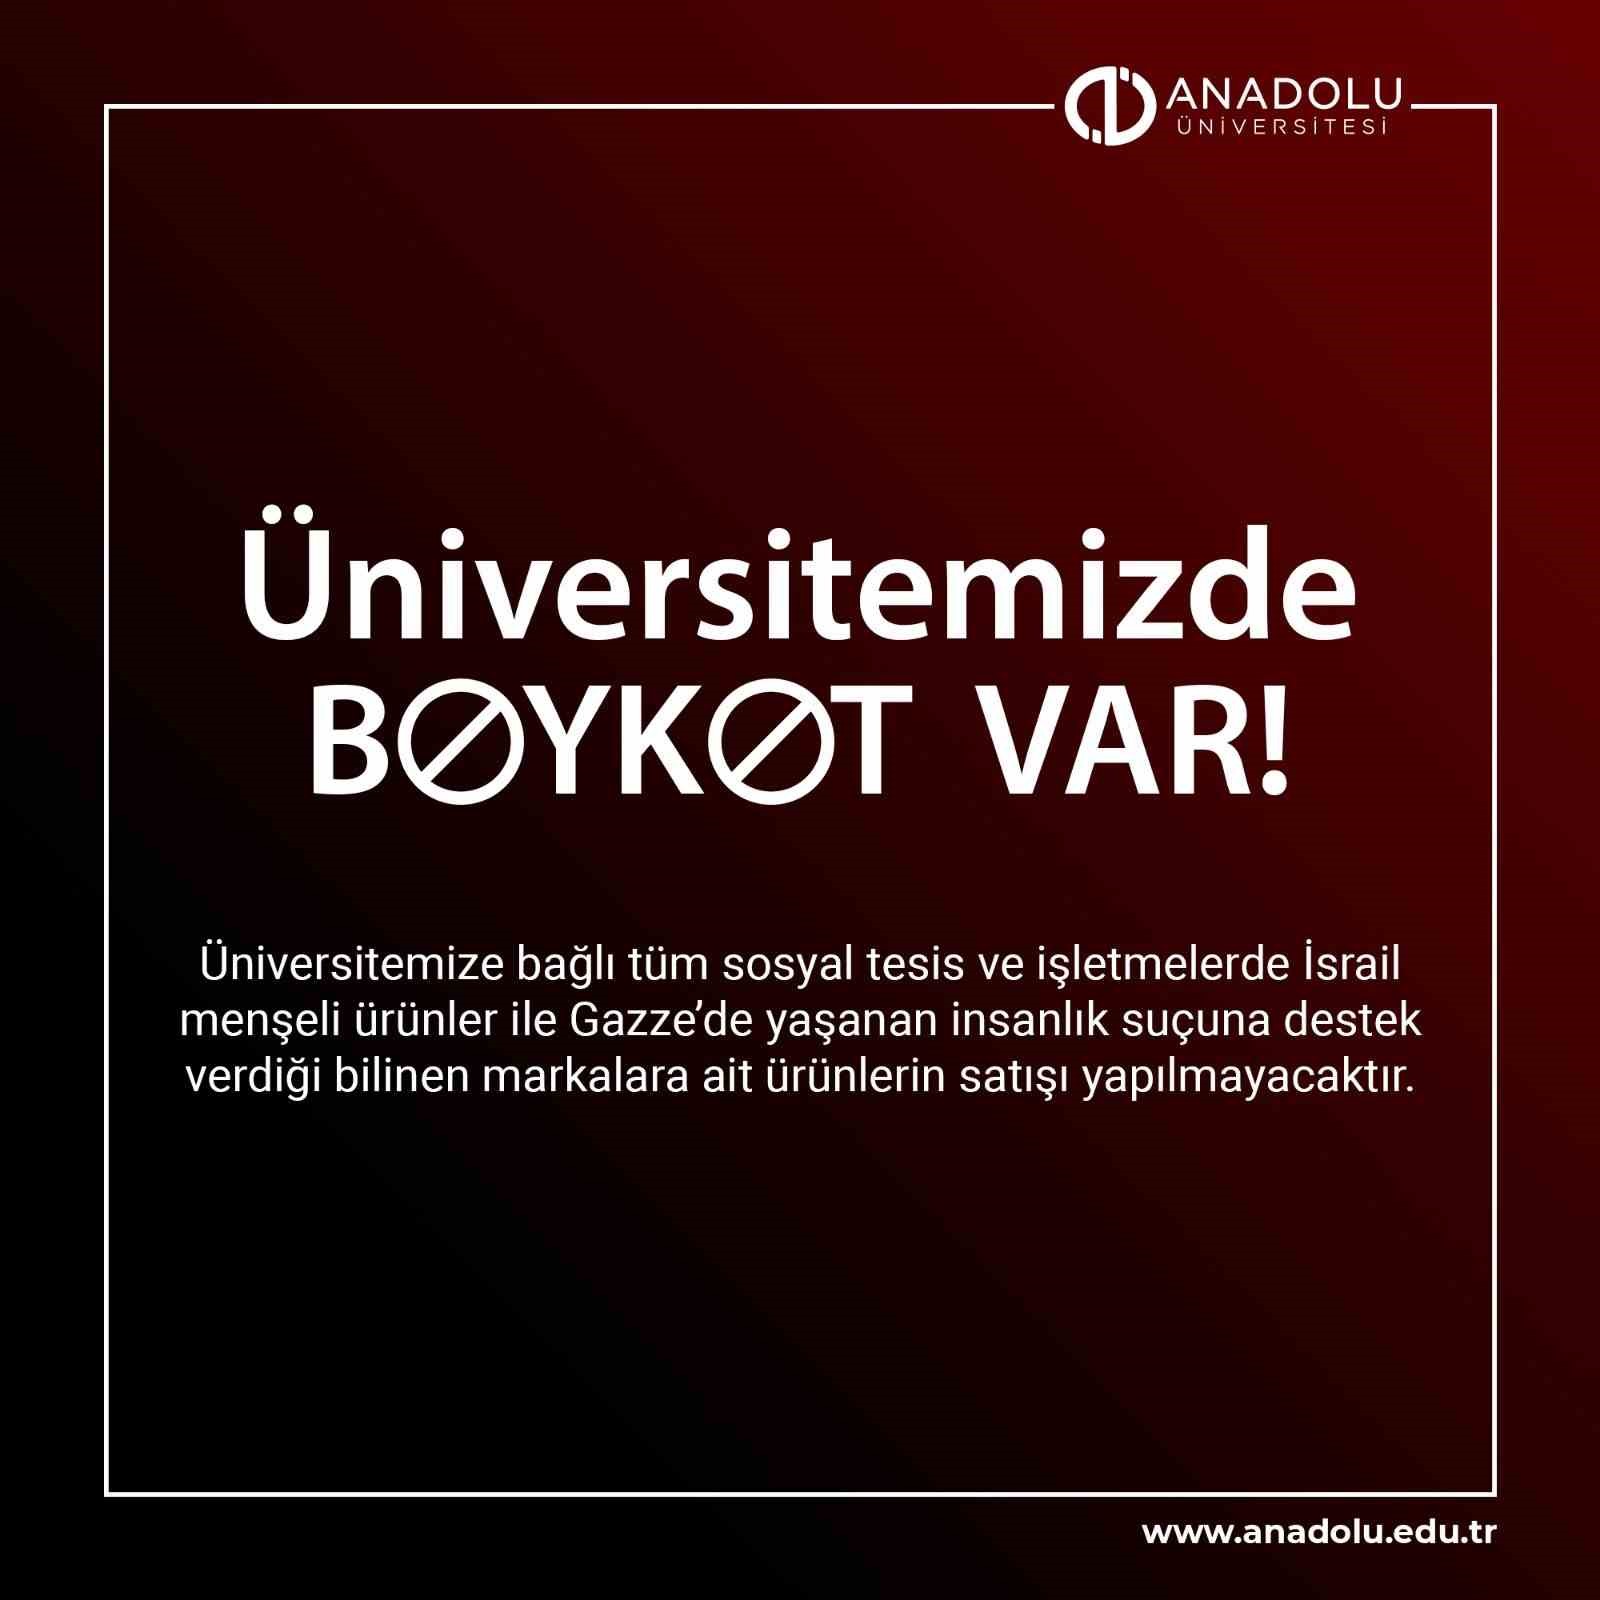 Anadolu Üniversitesi de boykot kararı açıkladı